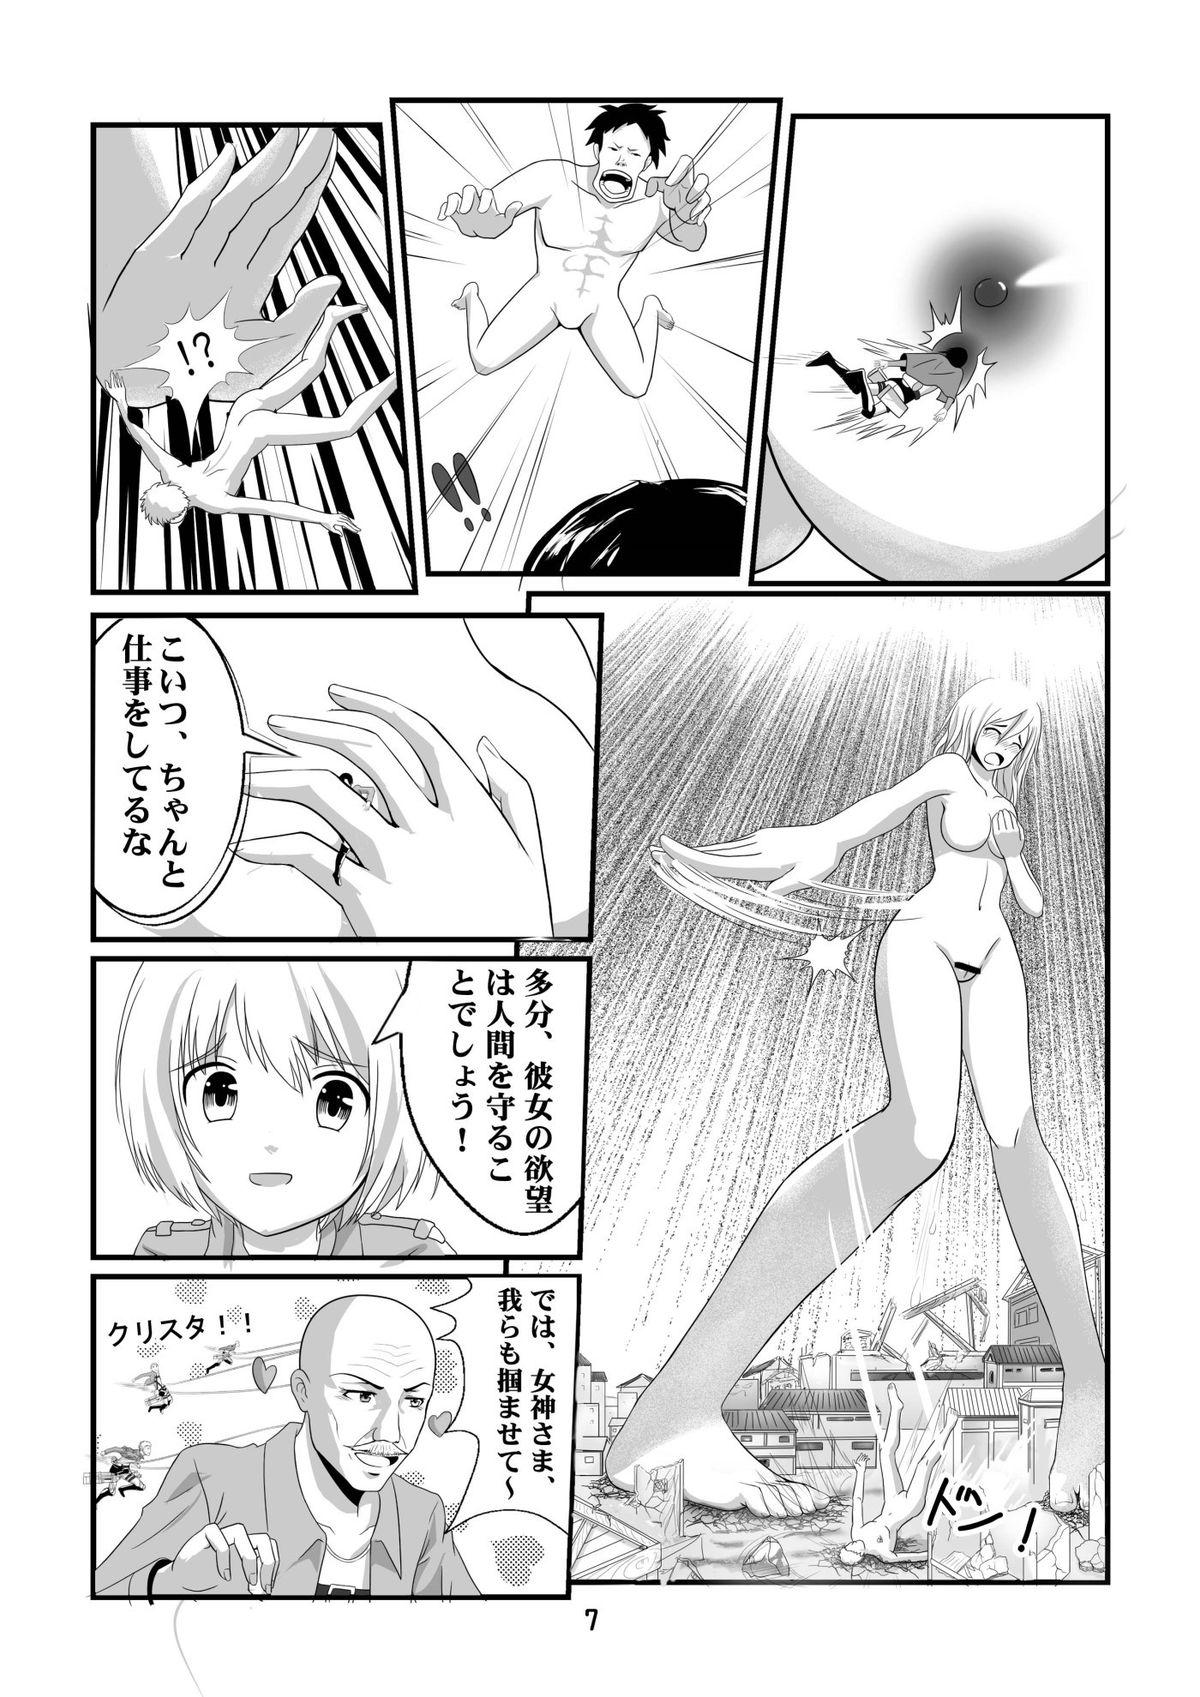 Culo Grande Shingeki no Yoku Onna - Shingeki no kyojin Femdom - Page 9